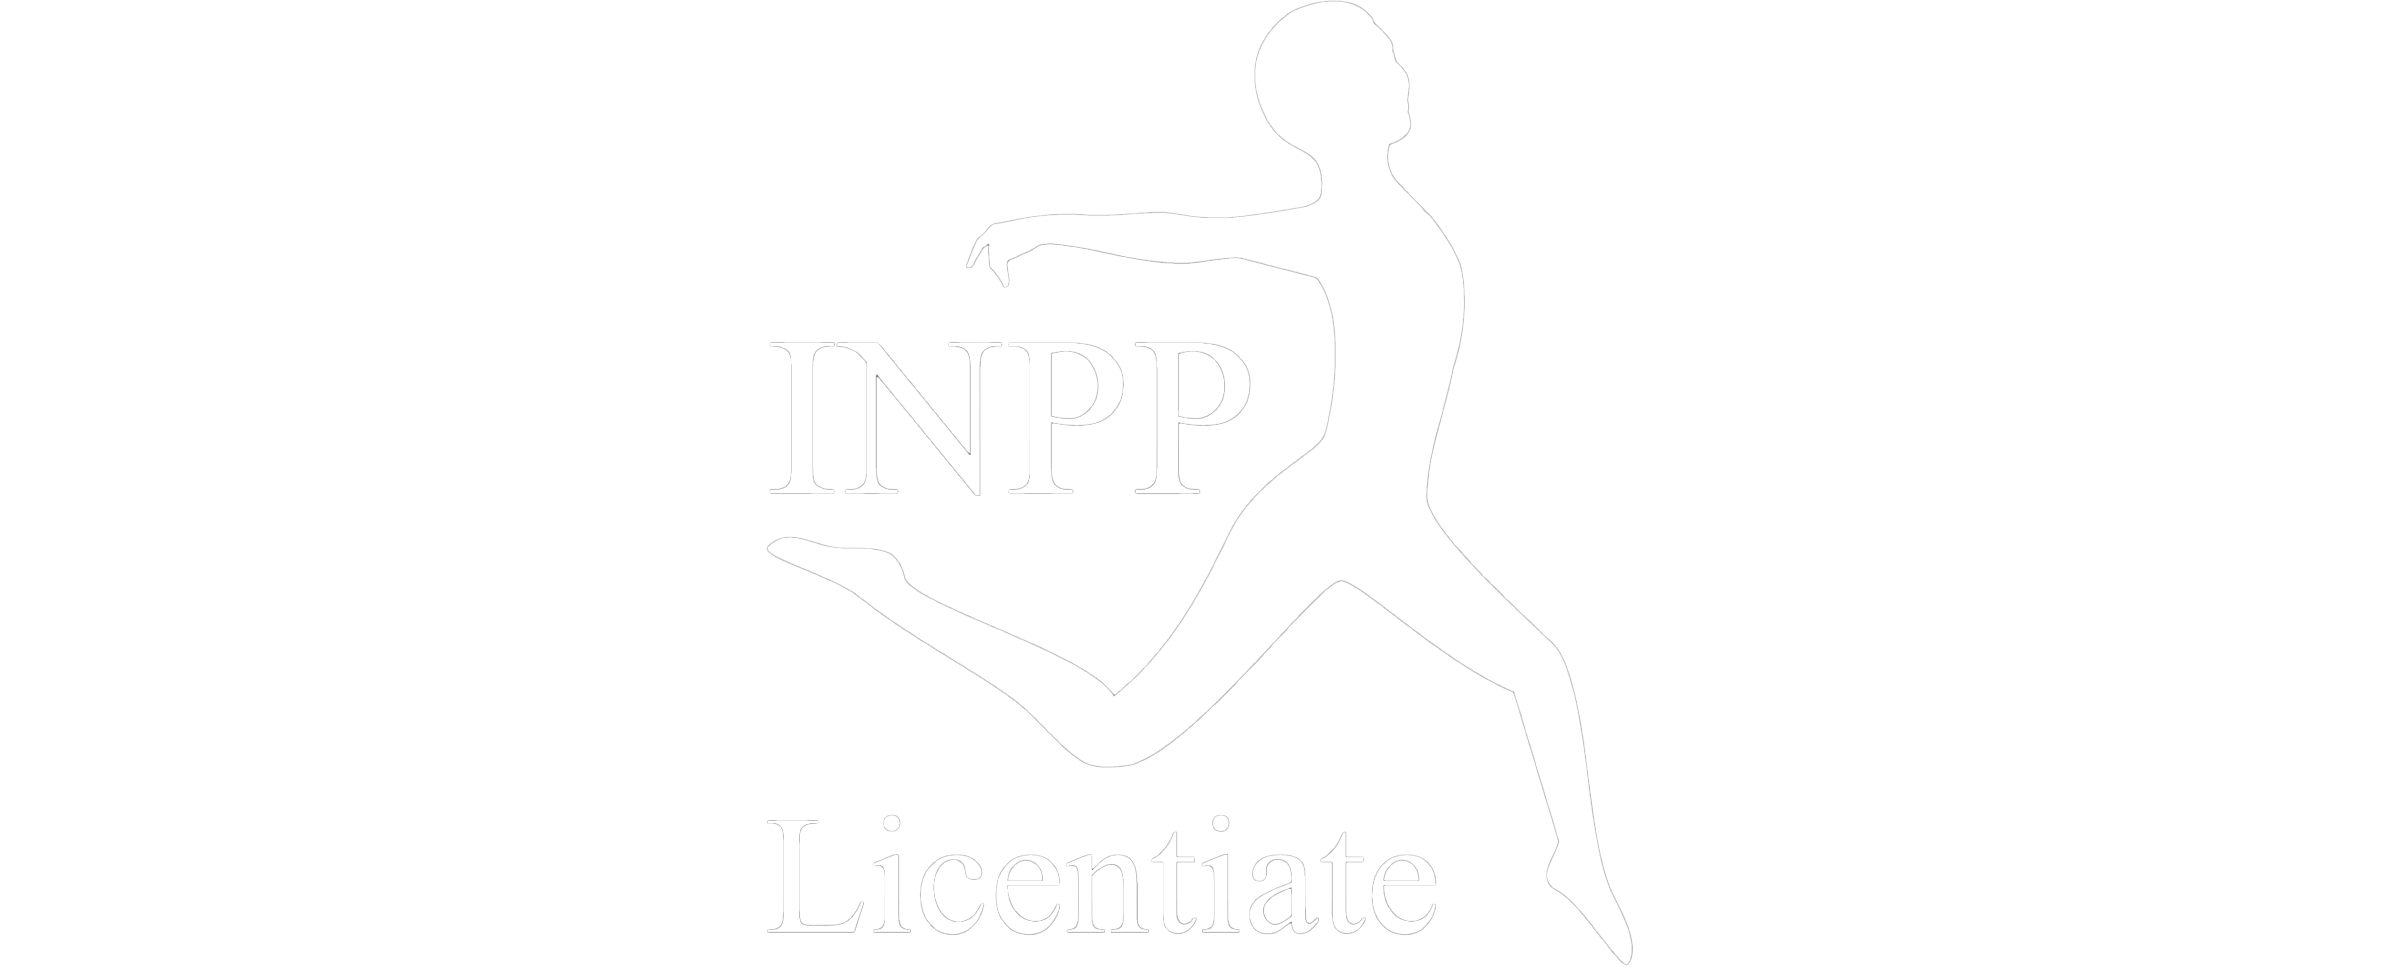 inpp logo